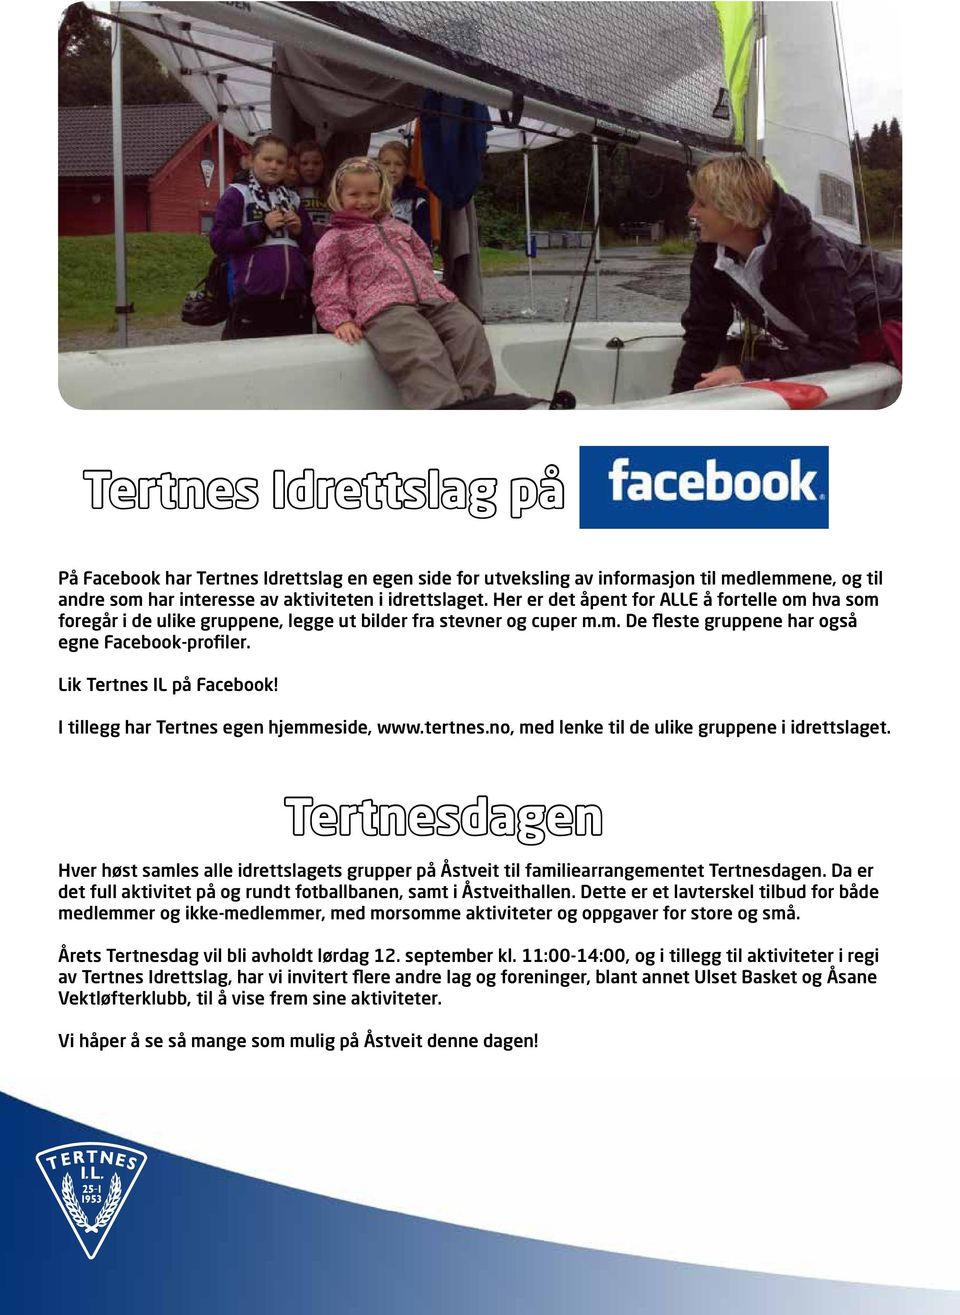 I tillegg har Tertnes egen hjemmeside, www.tertnes.no, med lenke til de ulike gruppene i idrettslaget.